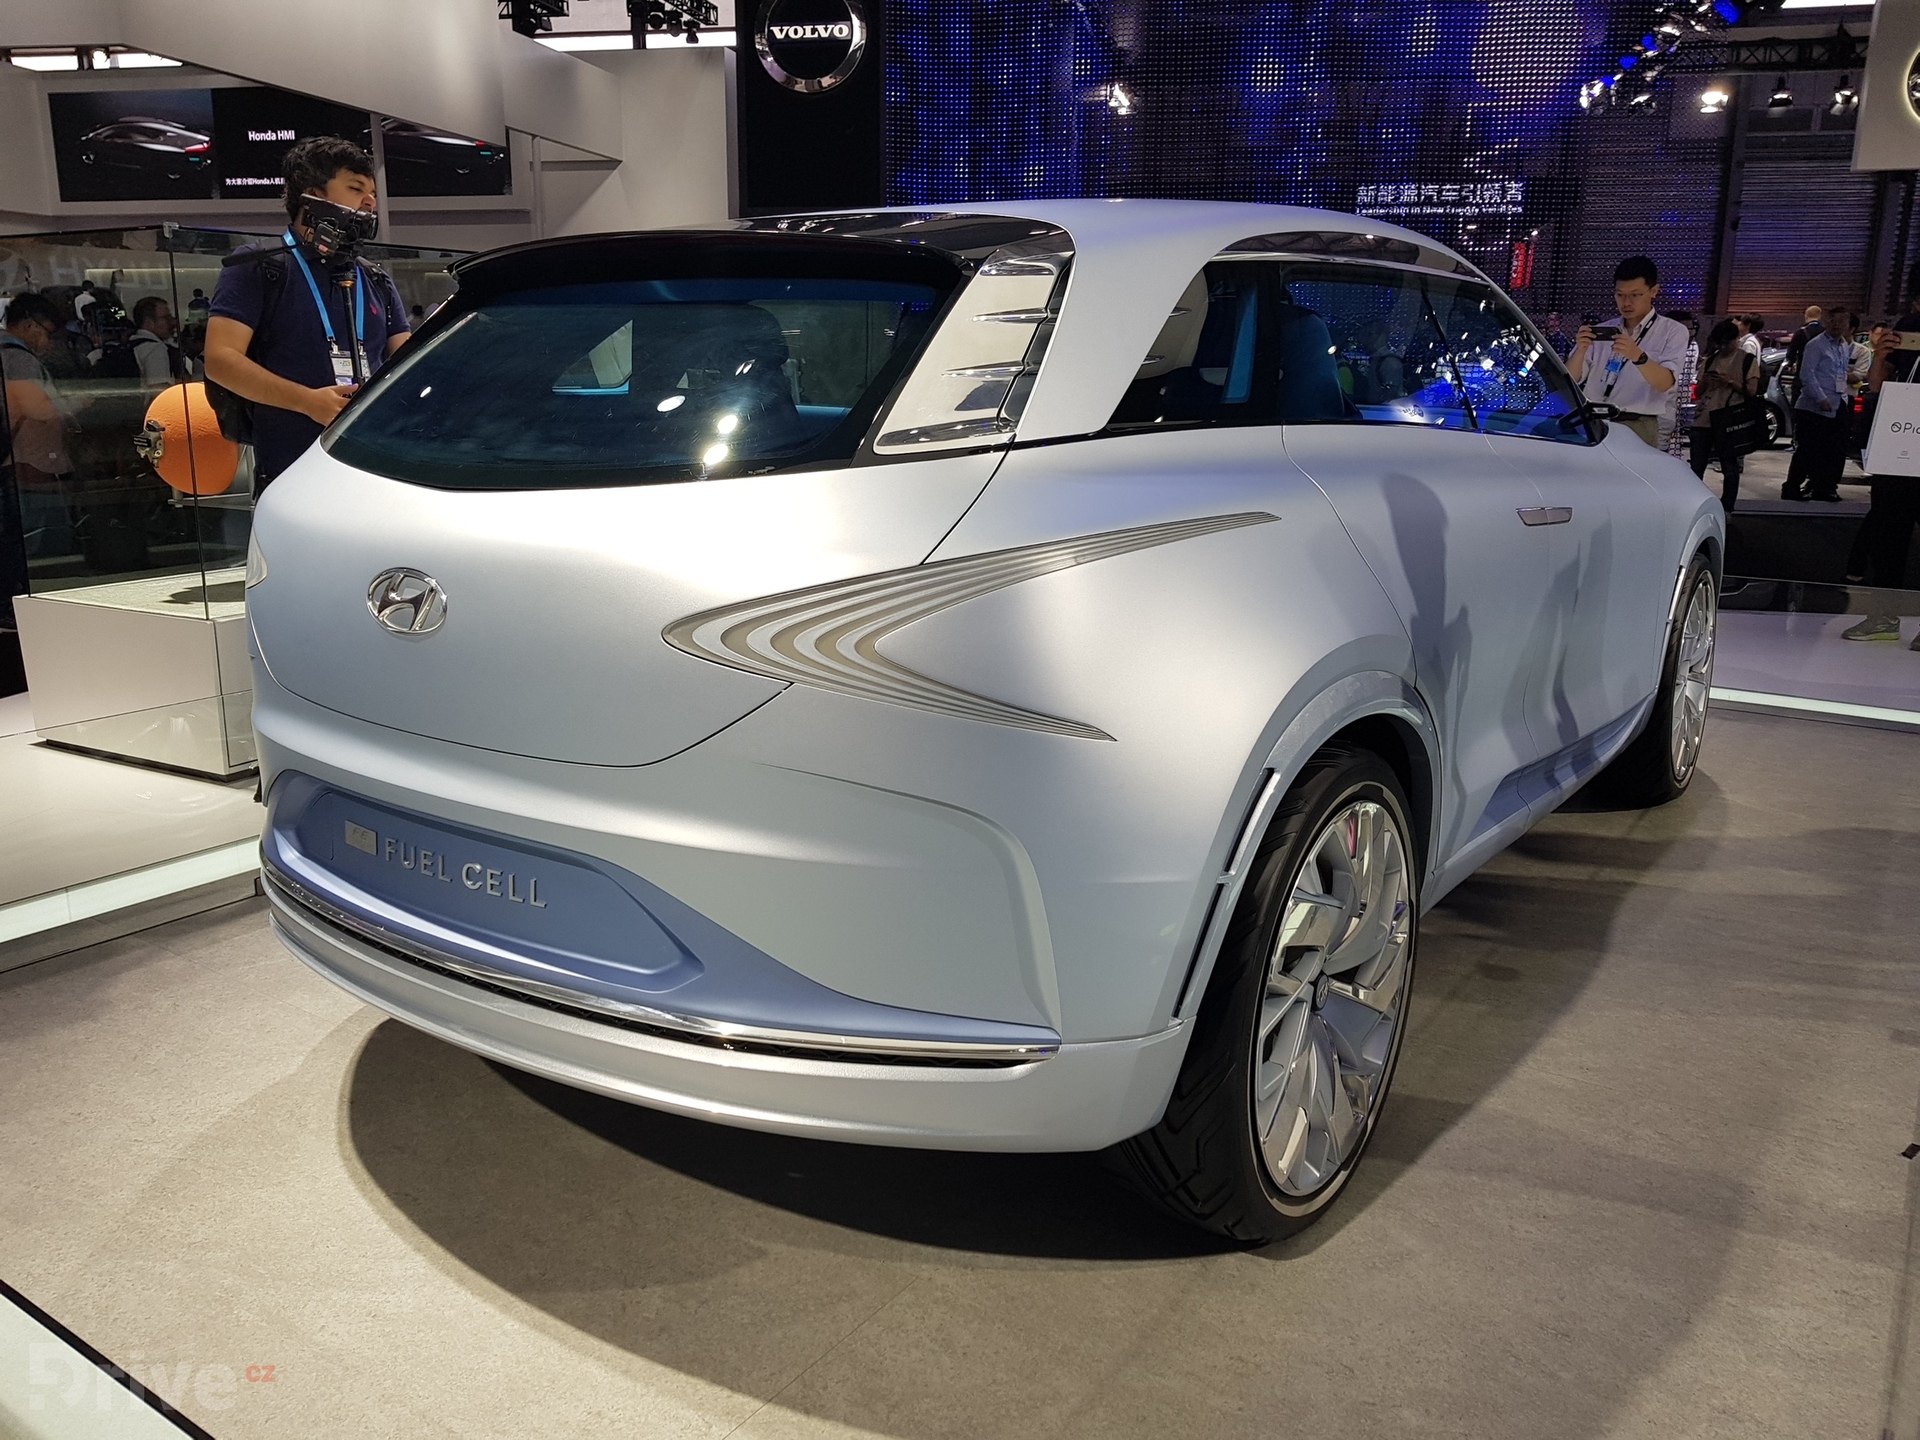 Hyundai FE Concept